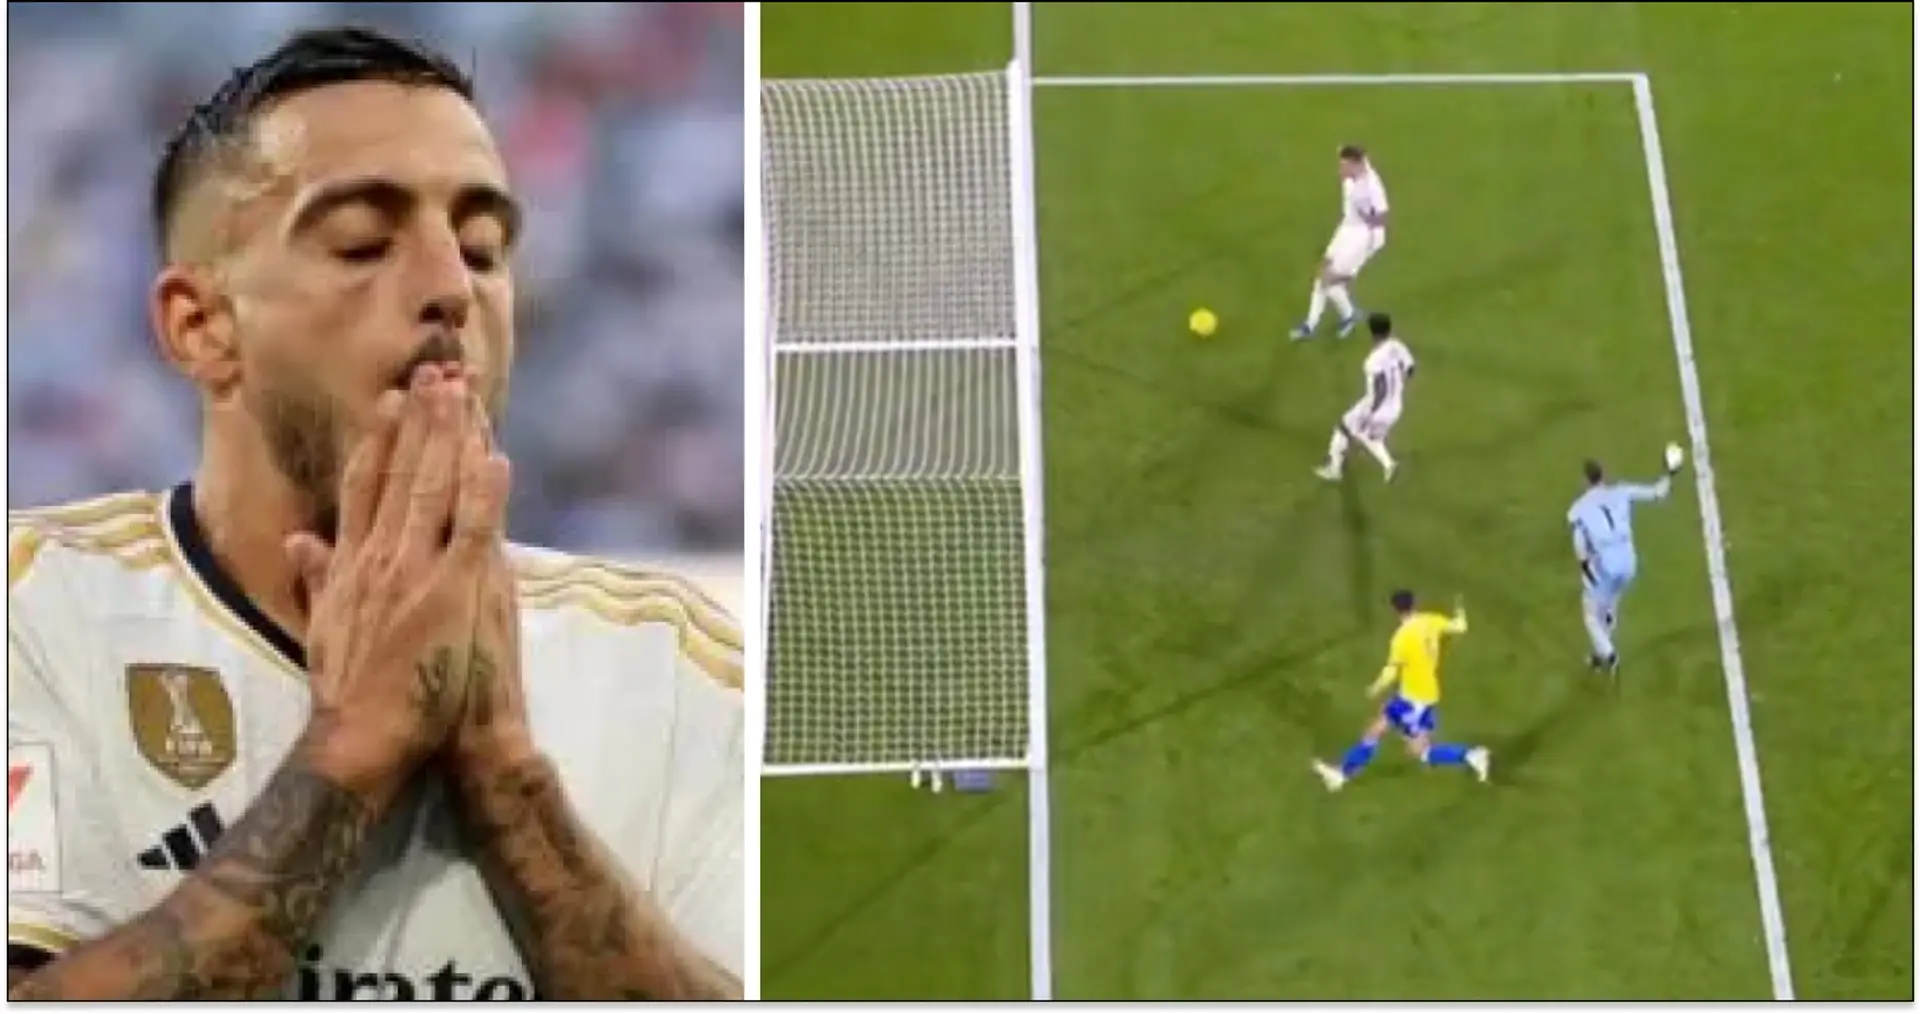 "Notre seul attaquant 😭😭😭": les supporters du Real Madrid réagissent au manqué de Joselu contre Cadix